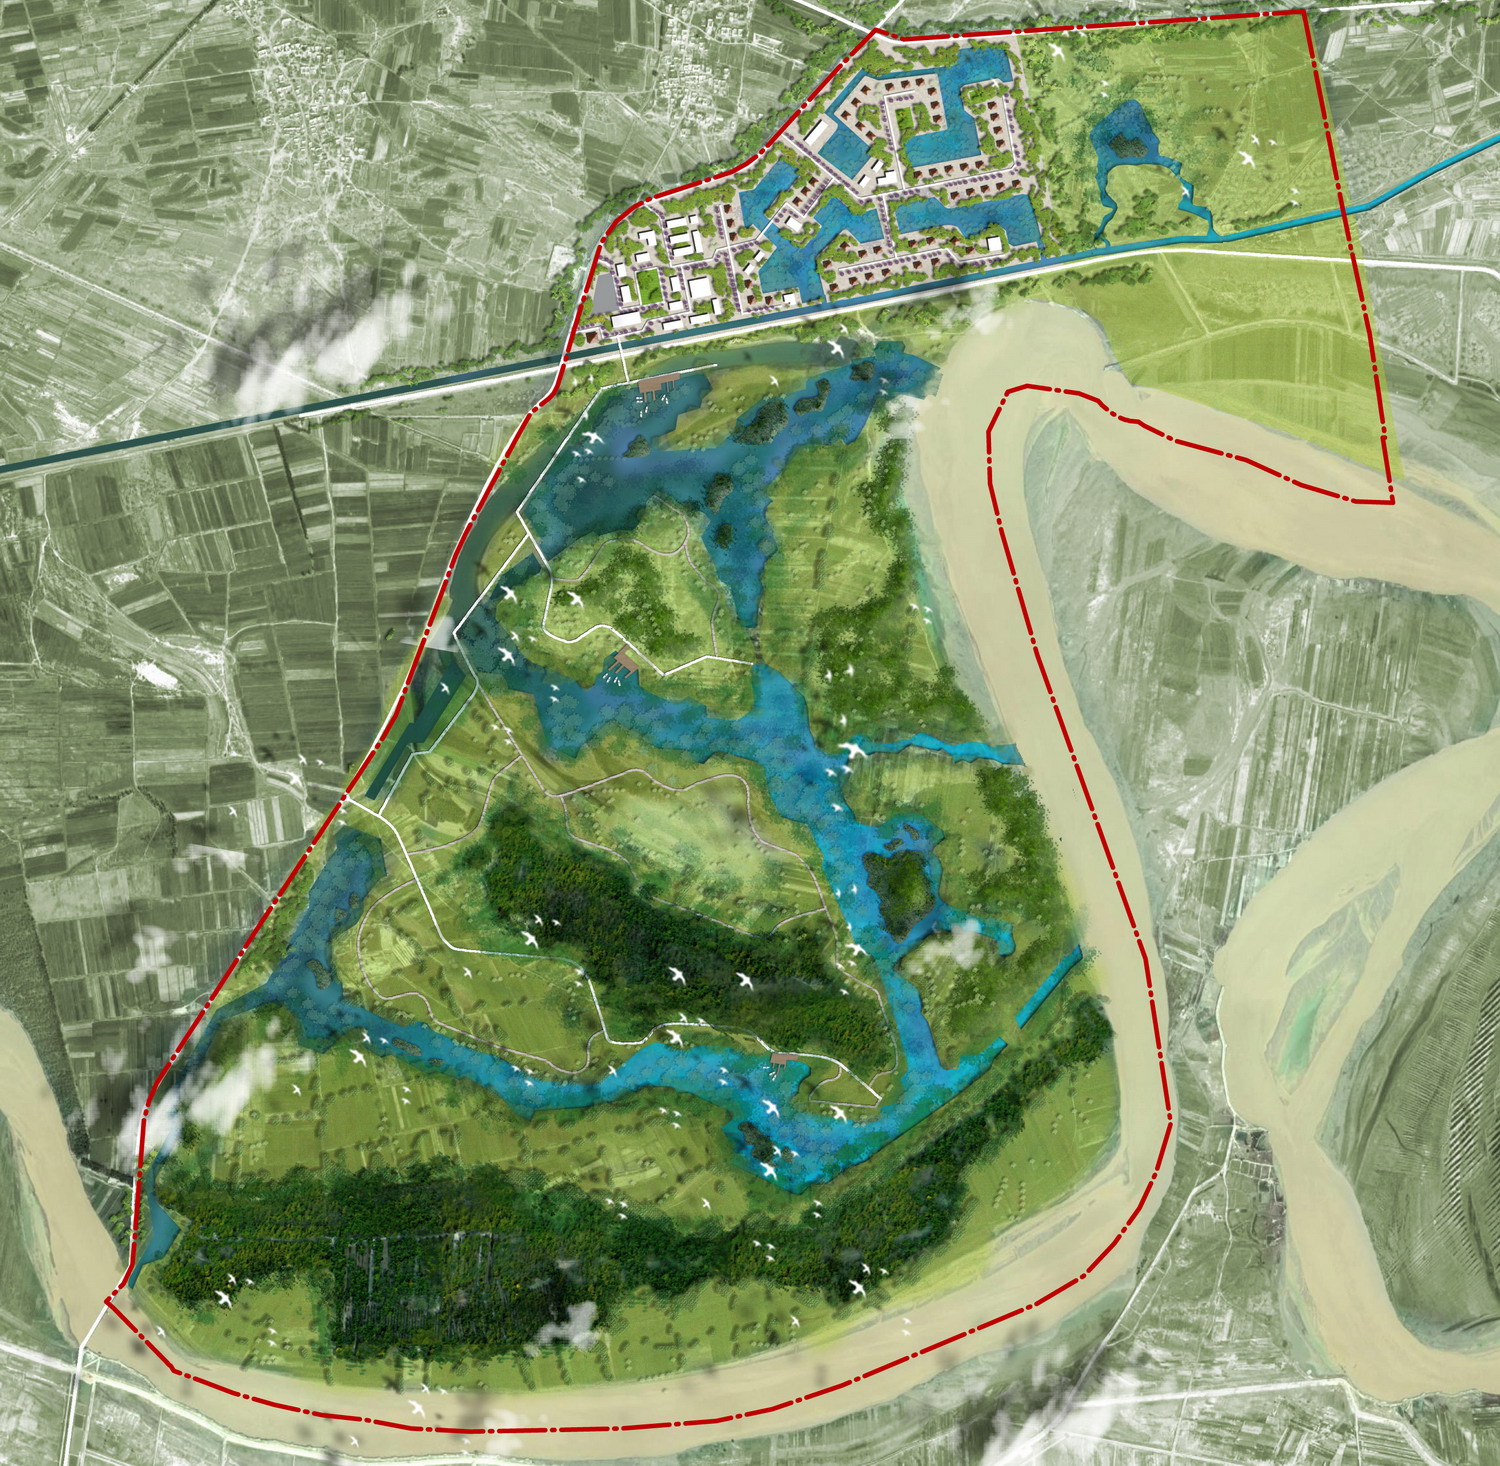 元亩塘湿地公园规划图图片